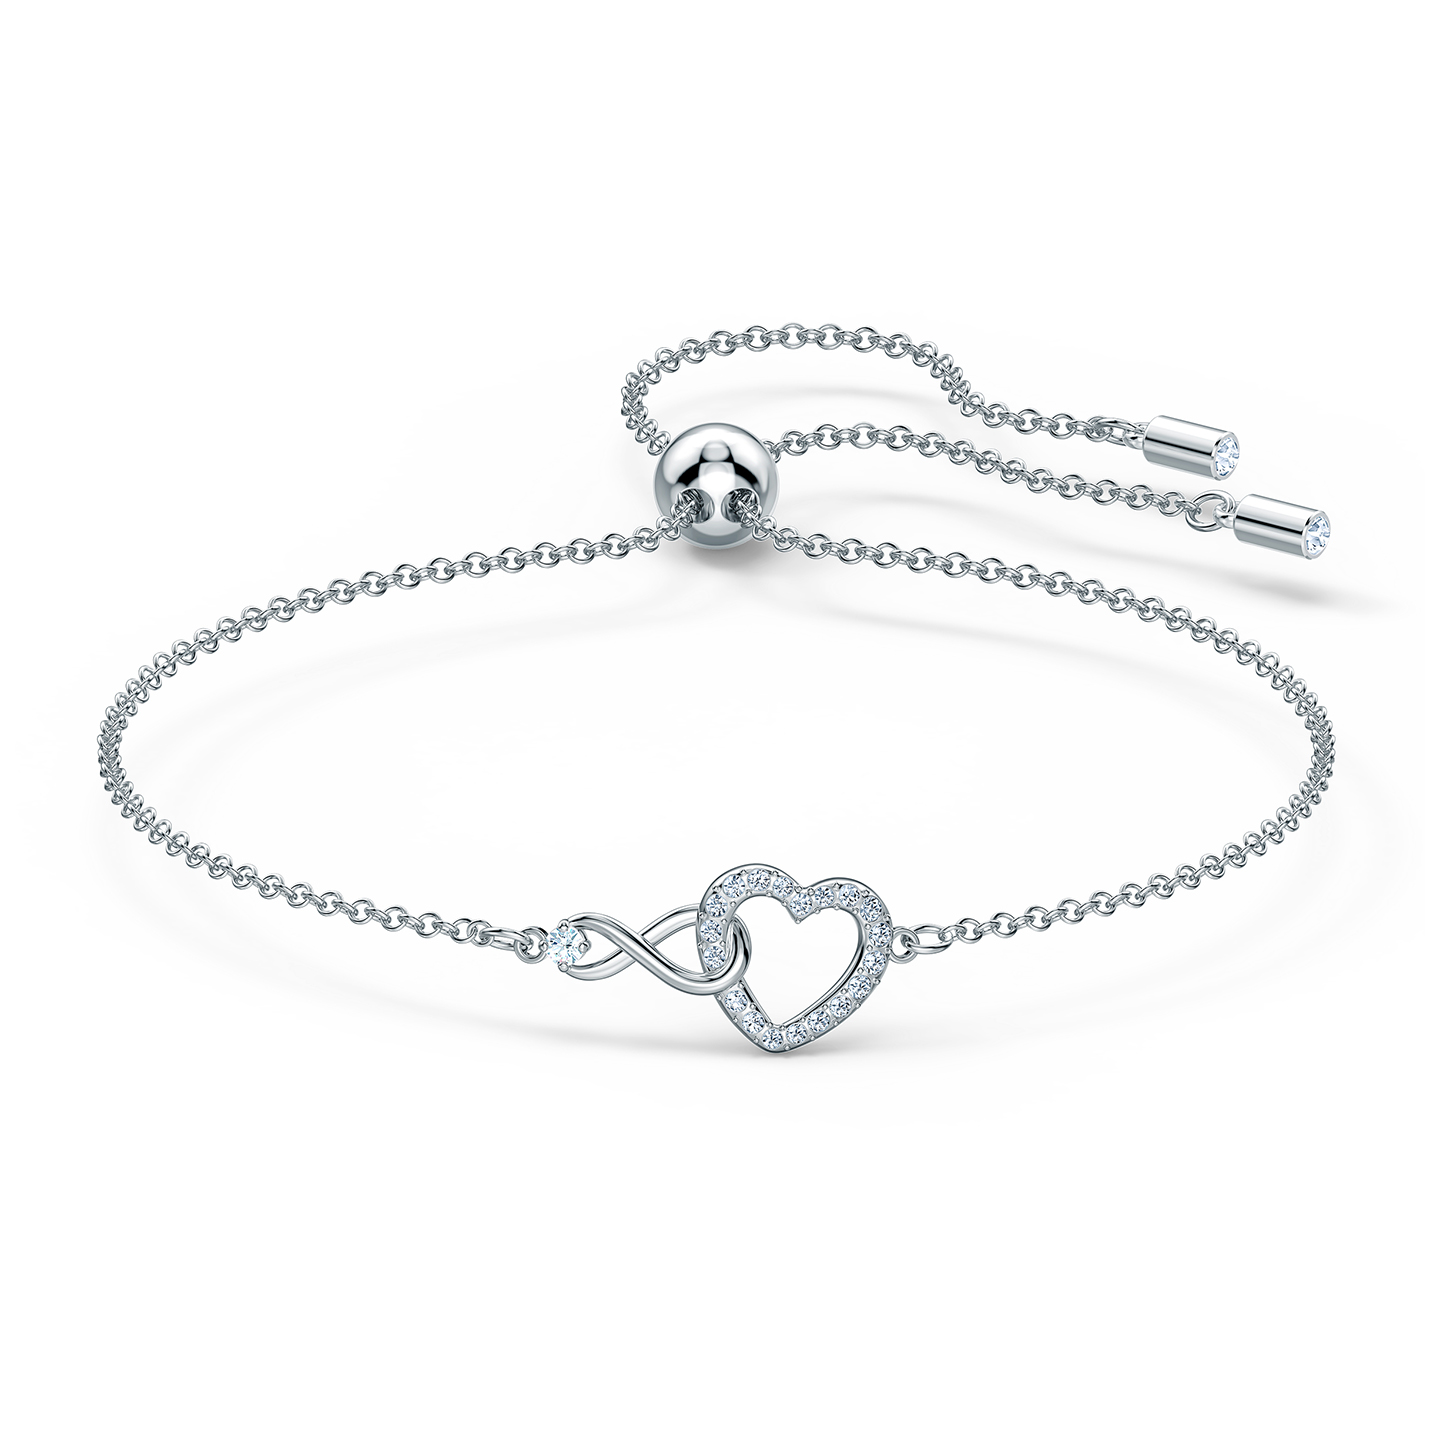 Swarovski Swarovski Infinity Heart Bracelet - White - Rhodium Plated